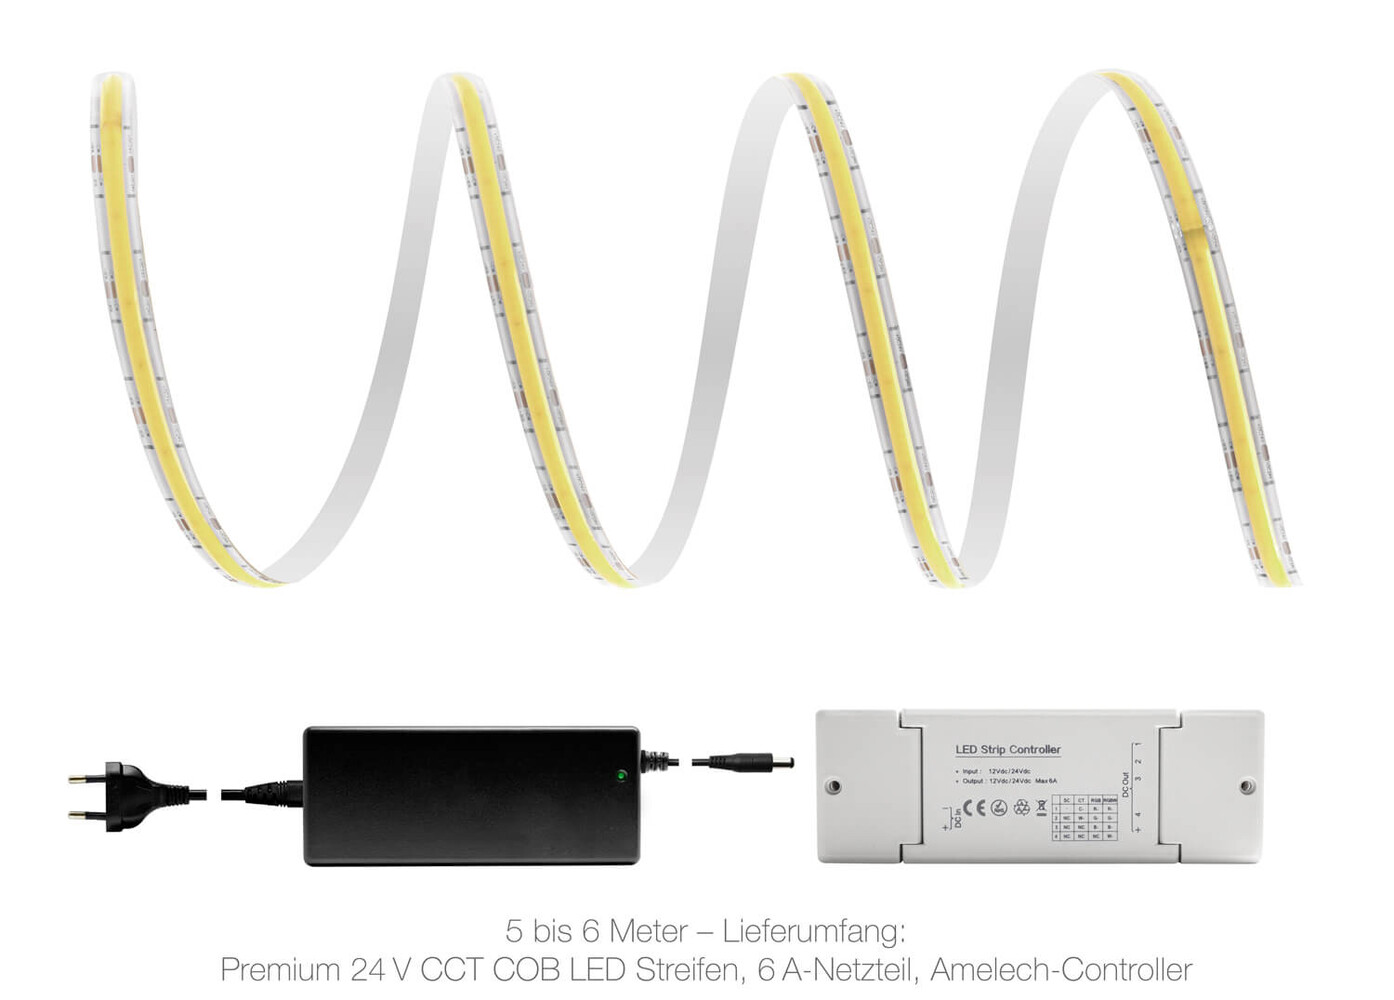 Premium 24V CCT COB LED Streifen in IP65 Smart Home Set inklusive Zigbee Controller und Netzteil von LED Universum